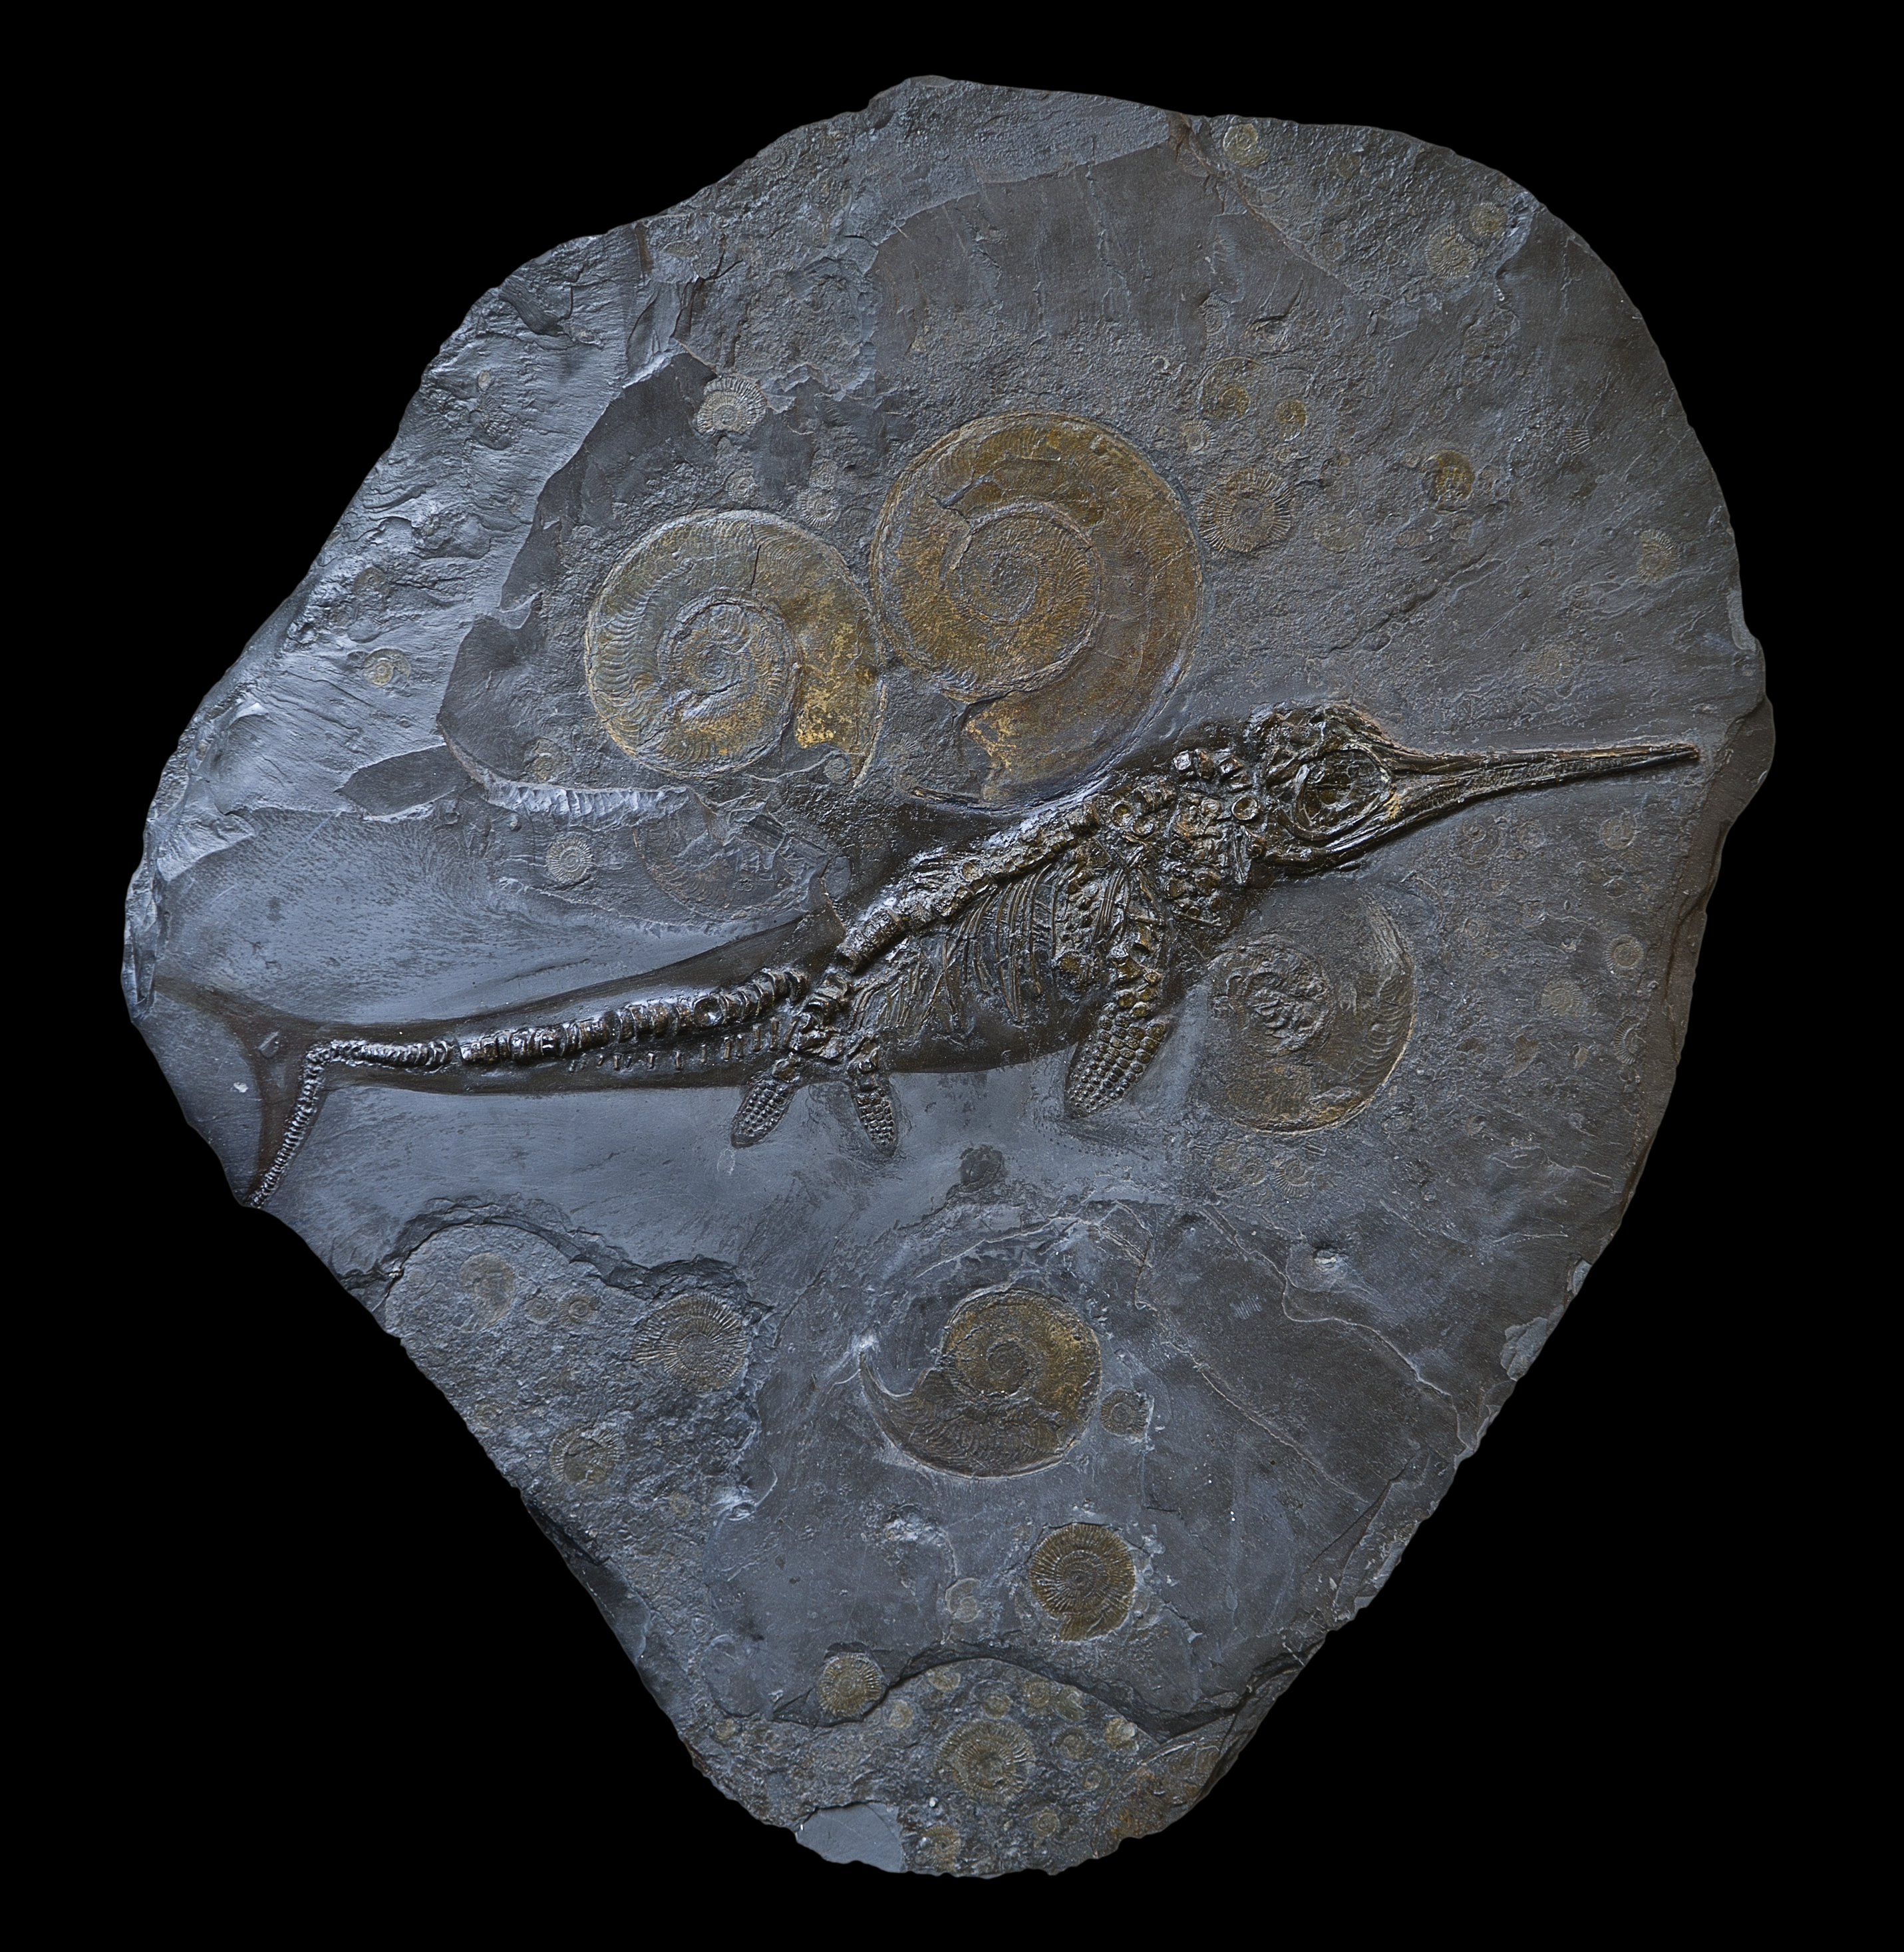 18亿年前鱼龙身上发现脂肪化石 看来味道不逊三文鱼